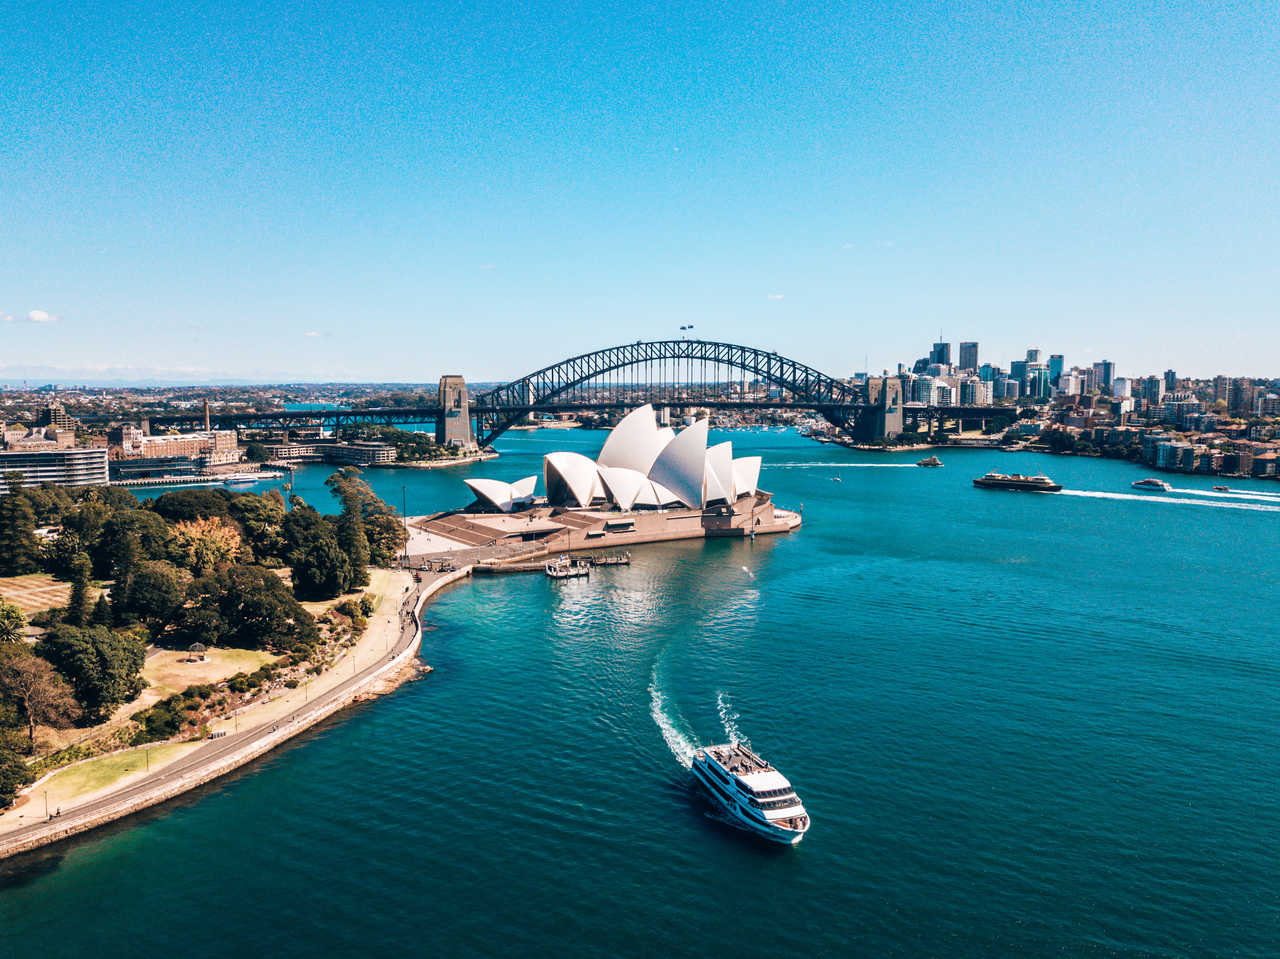 Vue aérienne du paysage de l'Opéra de Sydney